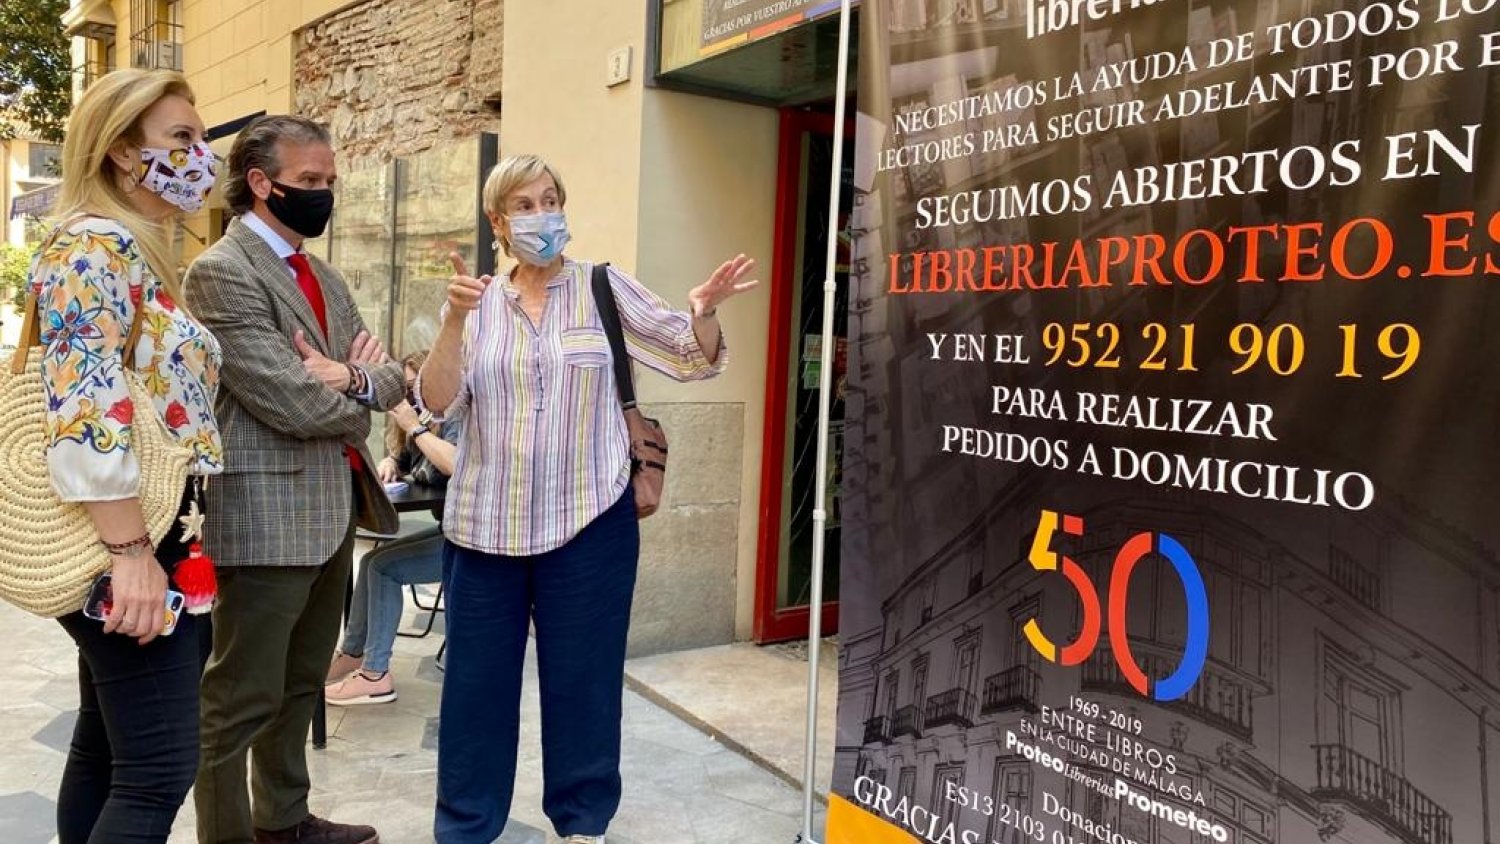 El PP de Málaga agradece la “ola de solidaridad” con la librería Proteo tras el incendio